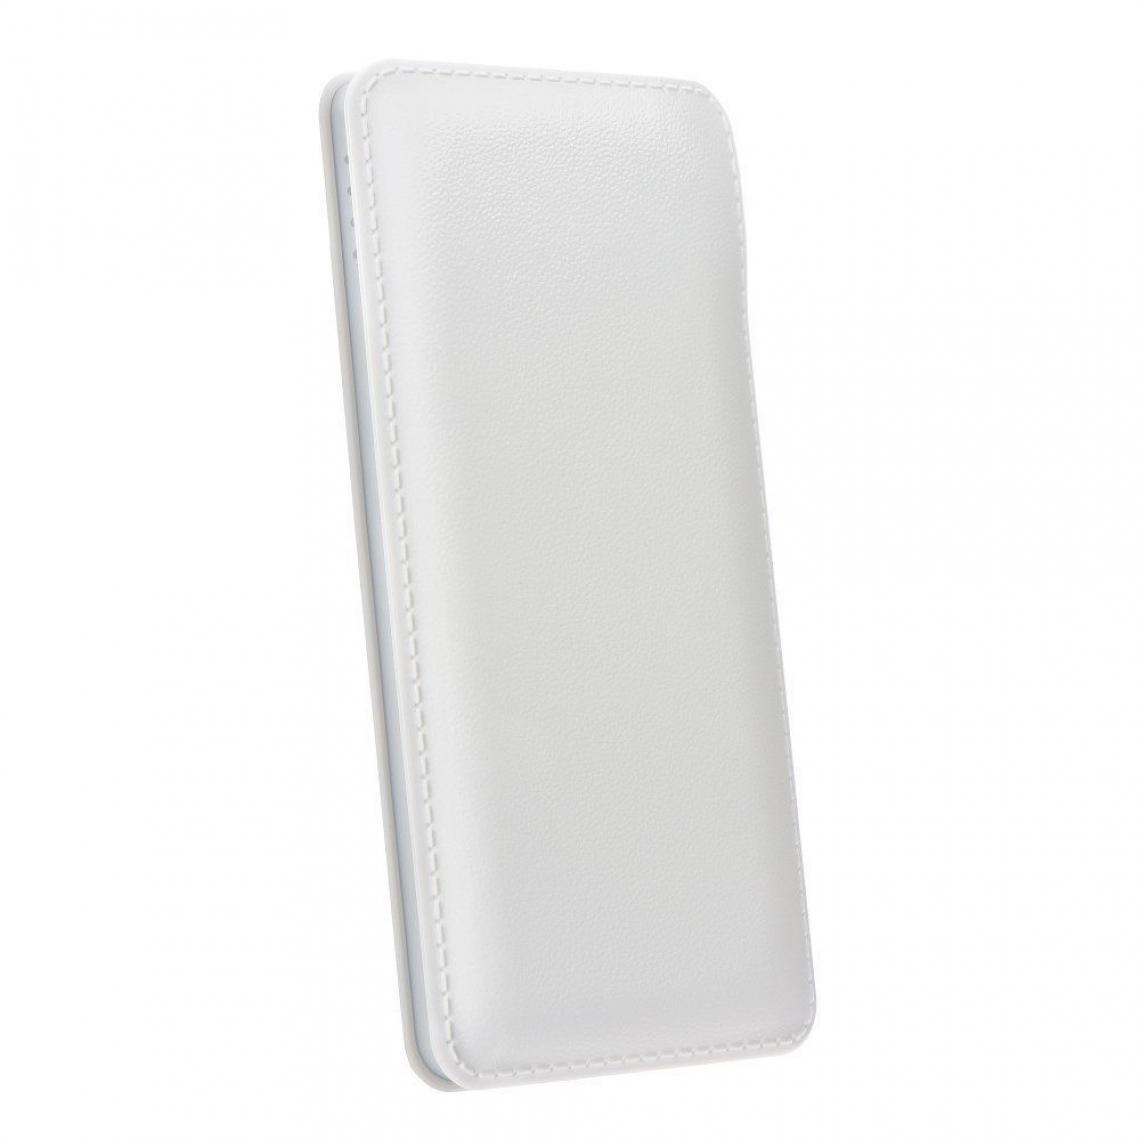 Ozzzo - Chargeur batterie externe 30000 mAh powerbank ozzzo blanc pour LG G Pad 8.3" V500 - Autres accessoires smartphone